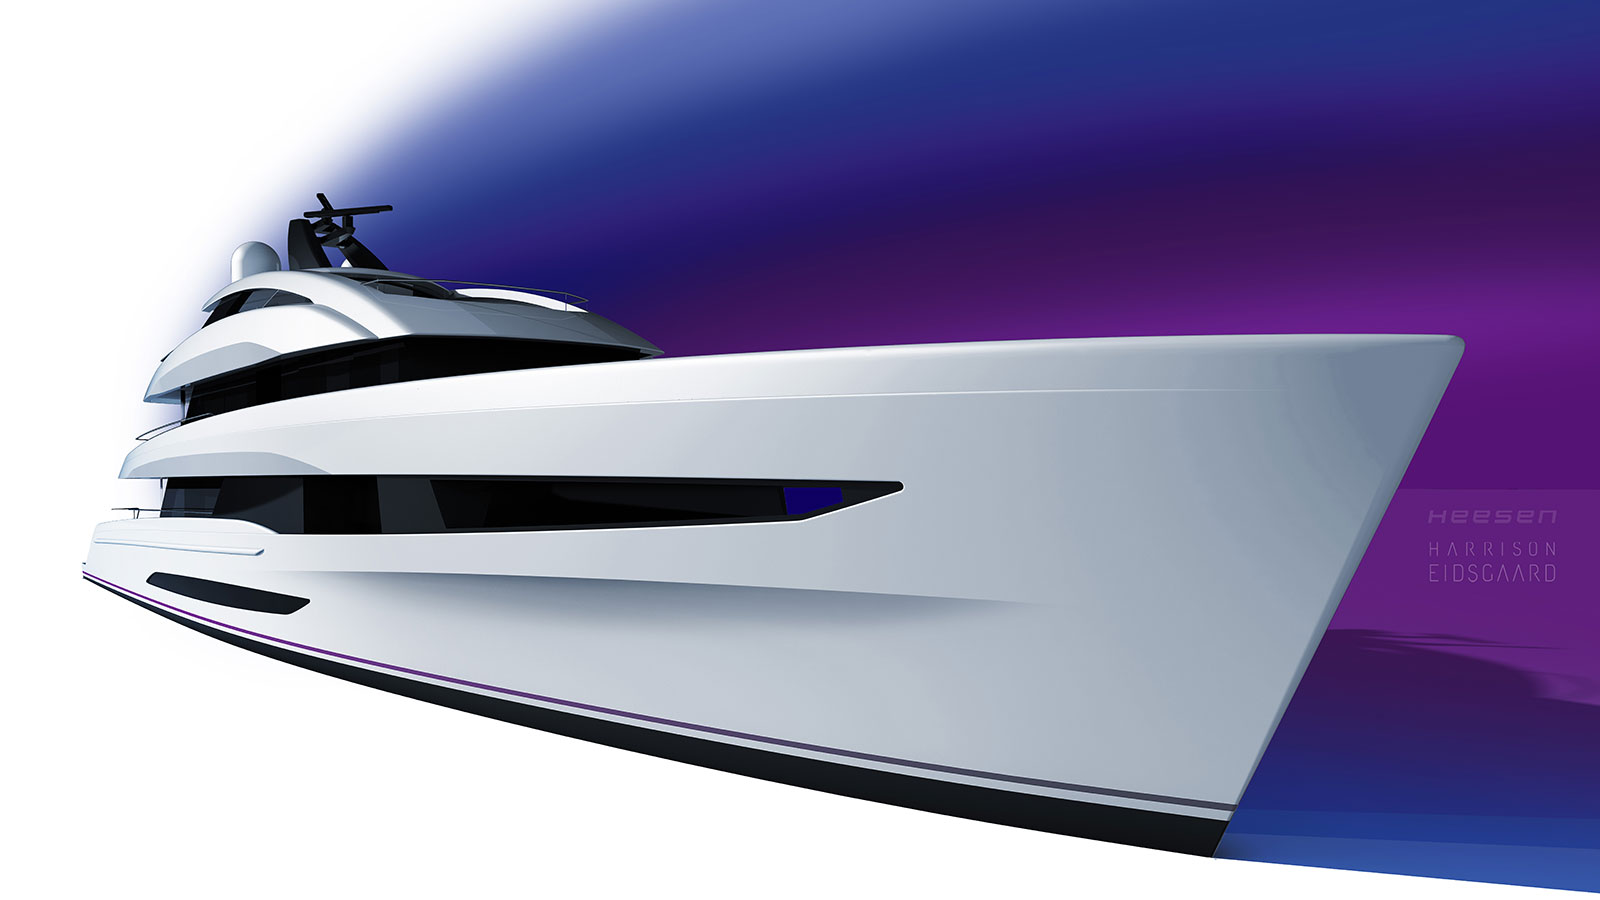 Heesen reveals exterior designer for new 50-metre FDHF Steel Series - Heesen Yachts